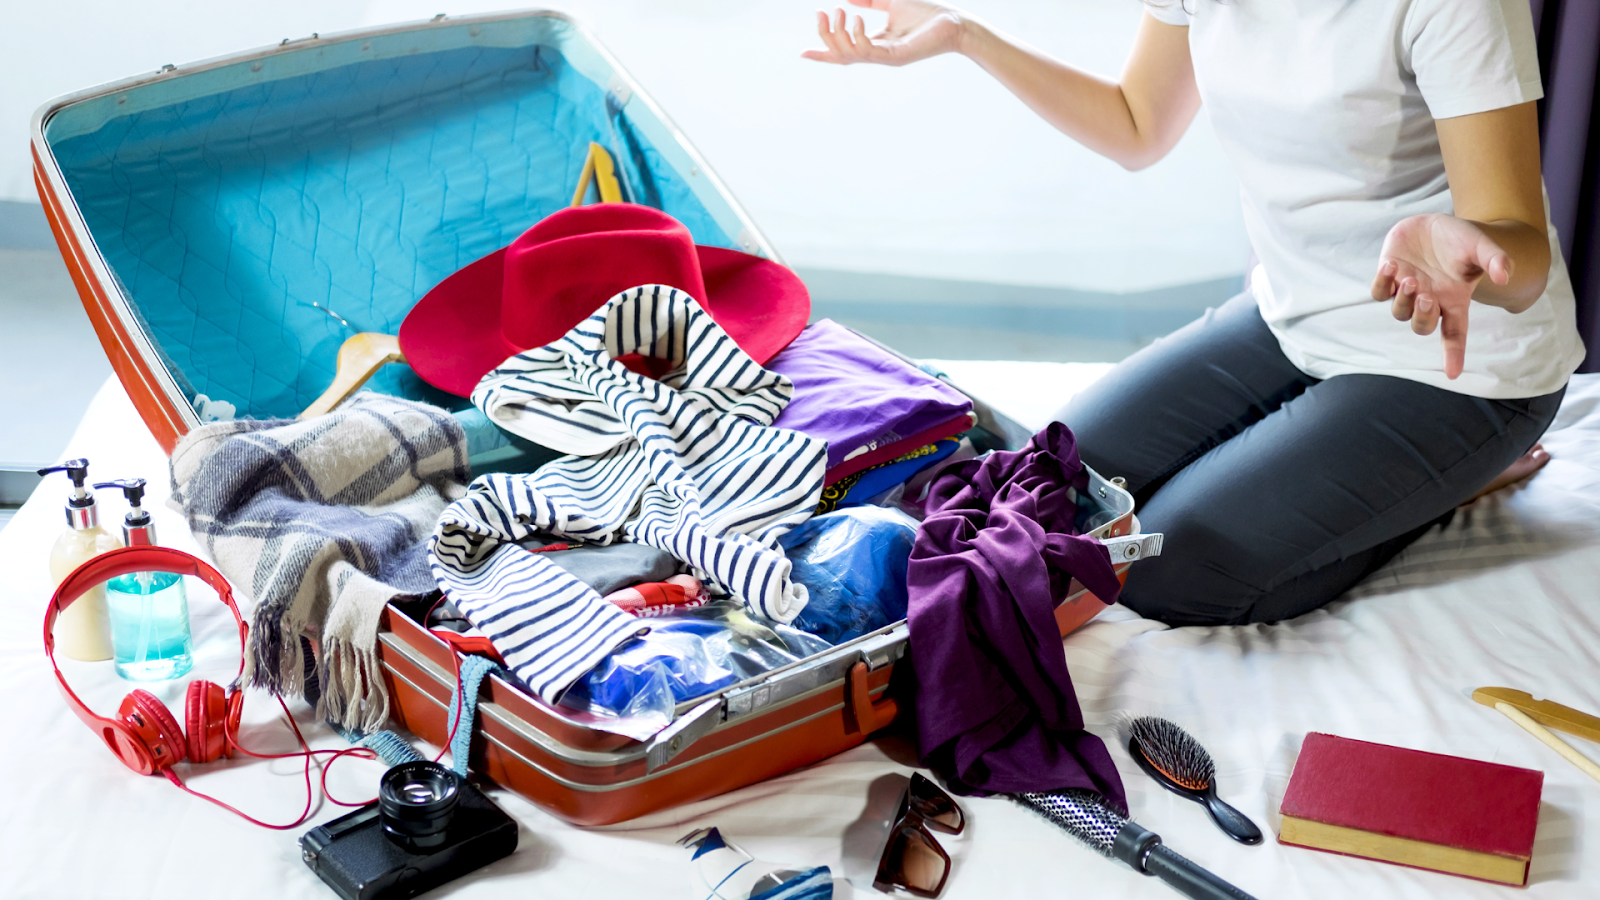 O que levar na mala de viagem? Checklist com itens que você não pode esquecer 